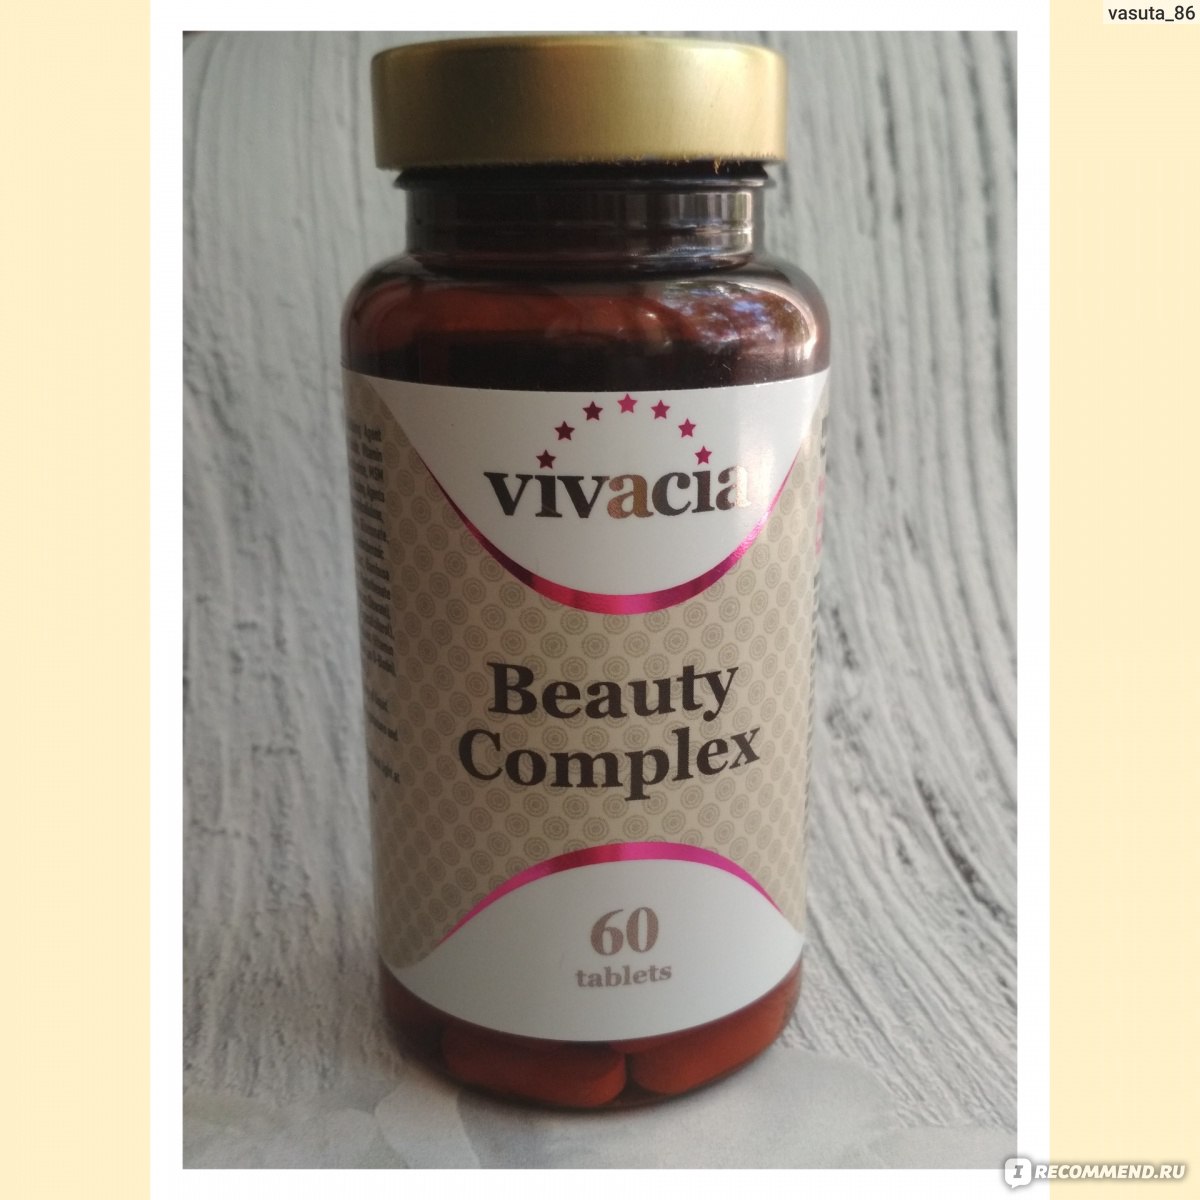 Vivacia vitamin. Витамины Англия vivacia. Vivacia витамины Complex. Вивация витамины Бьюти. Vivacia Beauty Complex таблетки.